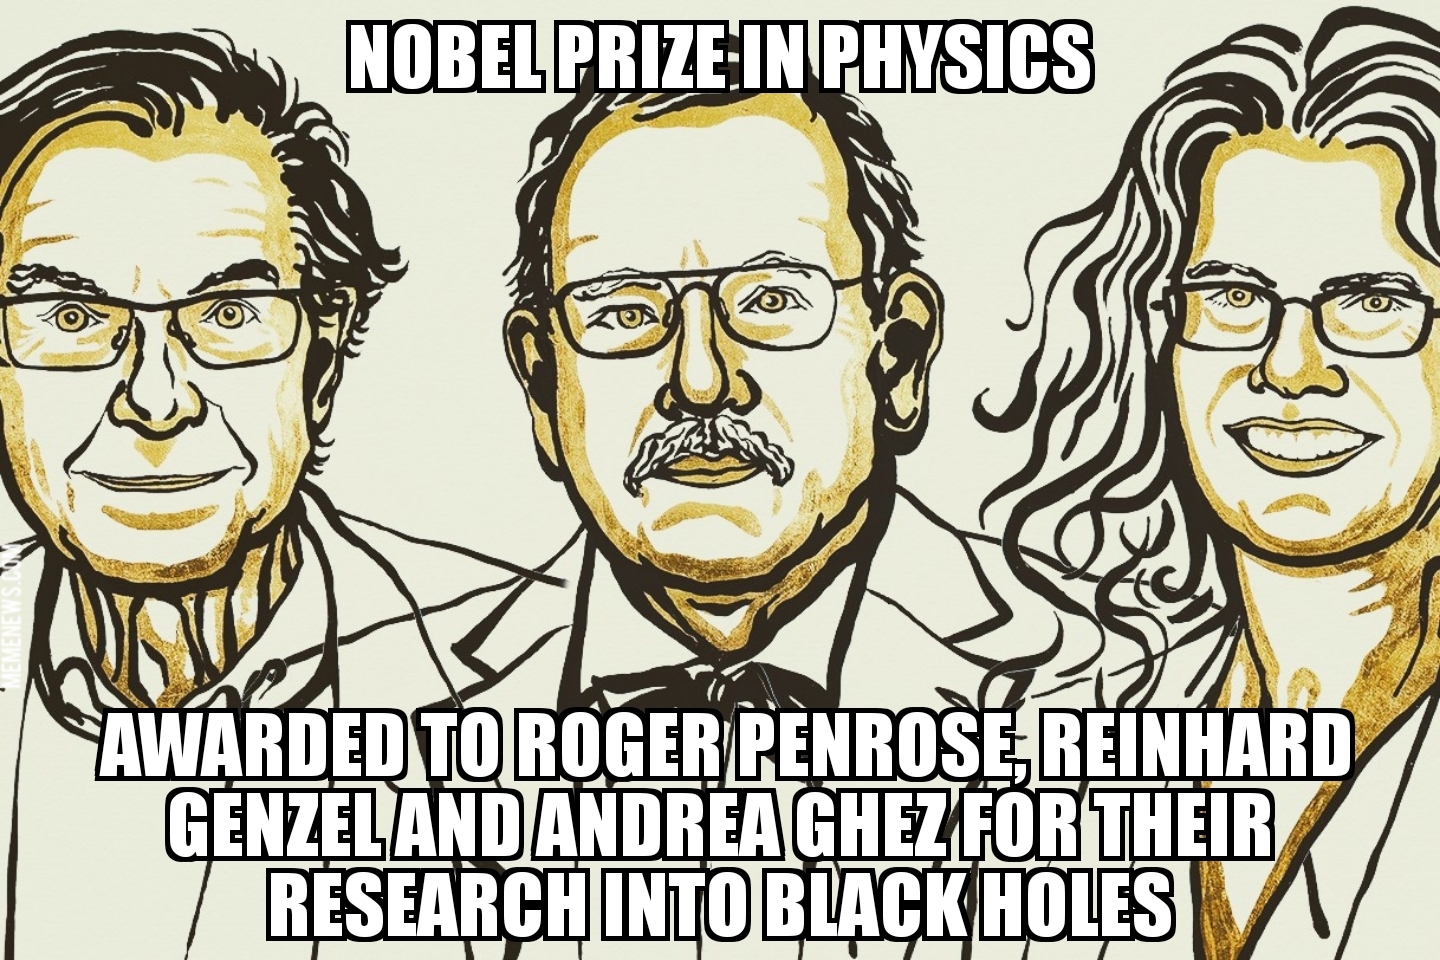 Nobel Prize in physics awarded